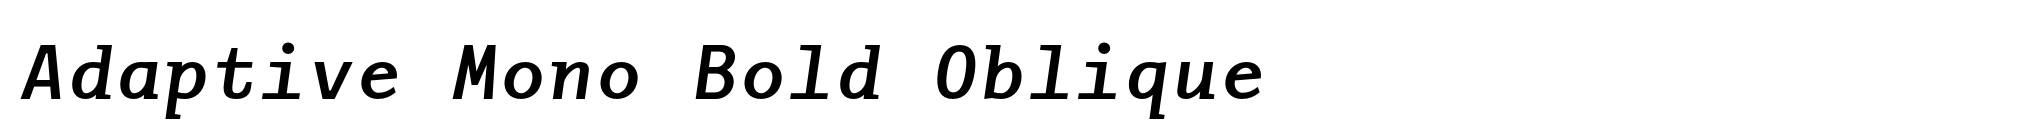 Adaptive Mono Bold Oblique image